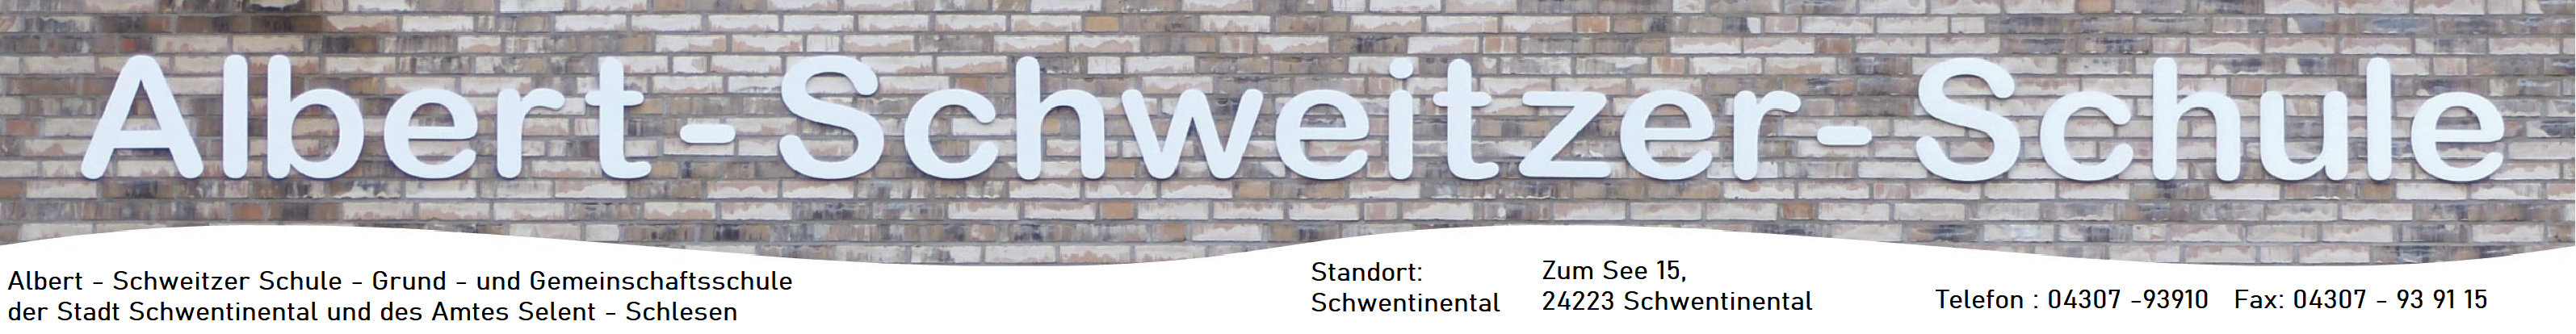 Albert-Schweitzer-Schule Schwentinental